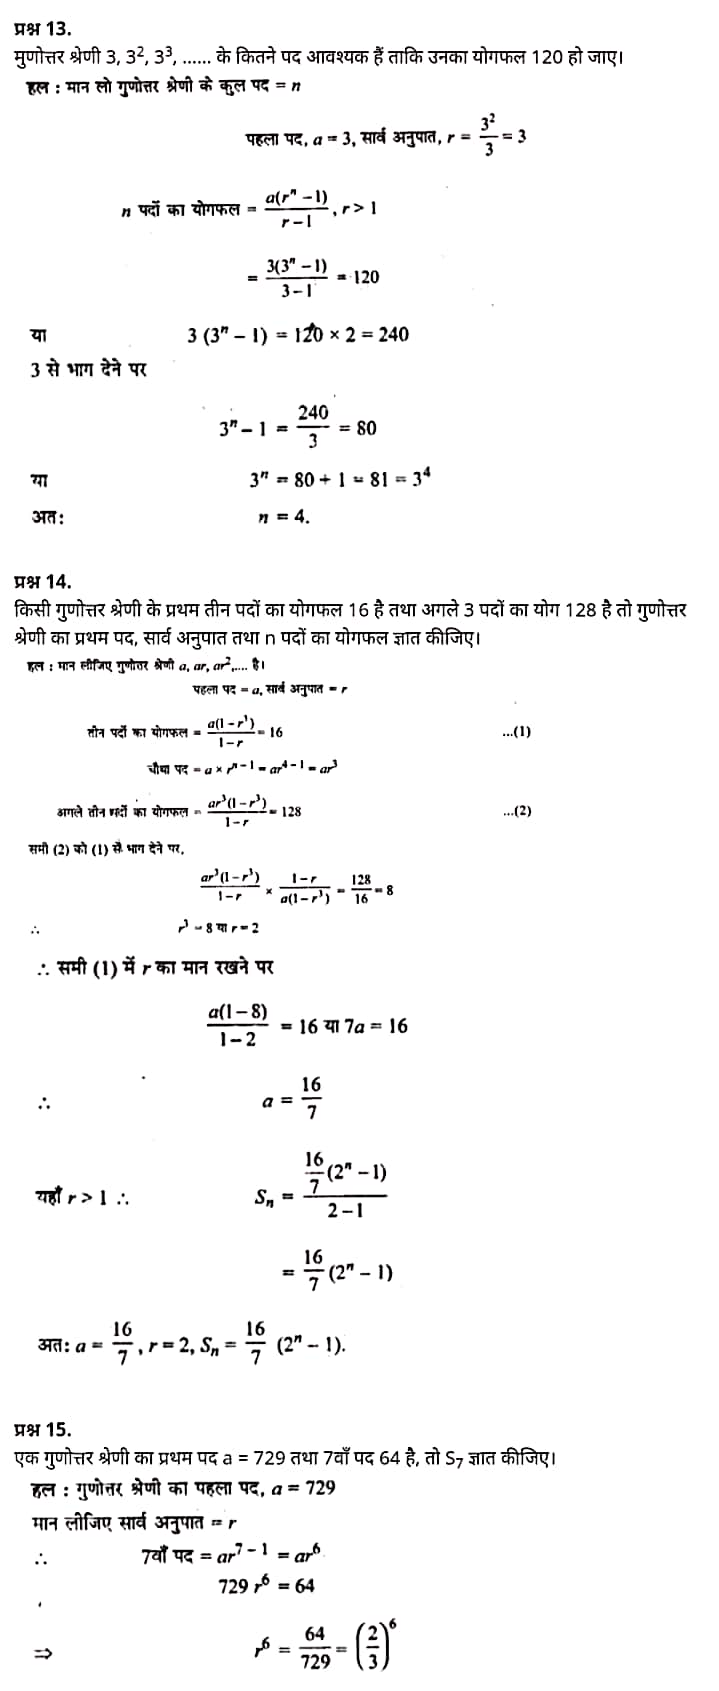 Class 11 matha Chapter 9,  class 11 matha chapter 9, ncert solutions in hindi,  class 11 matha chapter 9, notes in hindi,  class 11 matha chapter 9, question answer,  class 11 matha chapter 9, notes,  11 class matha chapter 9, in hindi,  class 11 matha chapter 9, in hindi,  class 11 matha chapter 9, important questions in hindi,  class 11 matha notes in hindi,   matha class 11 notes pdf,  matha Class 11 Notes 2021 NCERT,  matha Class 11 PDF,  matha book,  matha Quiz Class 11,  11th matha book up board,  up Board 11th matha Notes,  कक्षा 11 मैथ्स अध्याय 9,  कक्षा 11 मैथ्स का अध्याय 9, ncert solution in hindi,  कक्षा 11 मैथ्स के अध्याय 9, के नोट्स हिंदी में,  कक्षा 11 का मैथ्स अध्याय 9, का प्रश्न उत्तर,  कक्षा 11 मैथ्स अध्याय 9, के नोट्स,  11 कक्षा मैथ्स अध्याय 9, हिंदी में,  कक्षा 11 मैथ्स अध्याय 9, हिंदी में,  कक्षा 11 मैथ्स अध्याय 9, महत्वपूर्ण प्रश्न हिंदी में,  कक्षा 11 के मैथ्स के नोट्स हिंदी में,  मैथ्स कक्षा 11 नोट्स pdf,  मैथ्स कक्षा 11 नोट्स 2021 NCERT,  मैथ्स कक्षा 11 PDF,  मैथ्स पुस्तक,  मैथ्स की बुक,  मैथ्स प्रश्नोत्तरी Class 11, 11 वीं मैथ्स पुस्तक up board,  बिहार बोर्ड 11 वीं मैथ्स नोट्स,   कक्षा 11 गणित अध्याय 9,  कक्षा 11 गणित का अध्याय 9, ncert solution in hindi,  कक्षा 11 गणित के अध्याय 9, के नोट्स हिंदी में,  कक्षा 11 का गणित अध्याय 9, का प्रश्न उत्तर,  कक्षा 11 गणित अध्याय 9, के नोट्स,  11 कक्षा गणित अध्याय 9, हिंदी में,  कक्षा 11 गणित अध्याय 9, हिंदी में,  कक्षा 11 गणित अध्याय 9, महत्वपूर्ण प्रश्न हिंदी में,  कक्षा 11 के गणित के नोट्स हिंदी में,